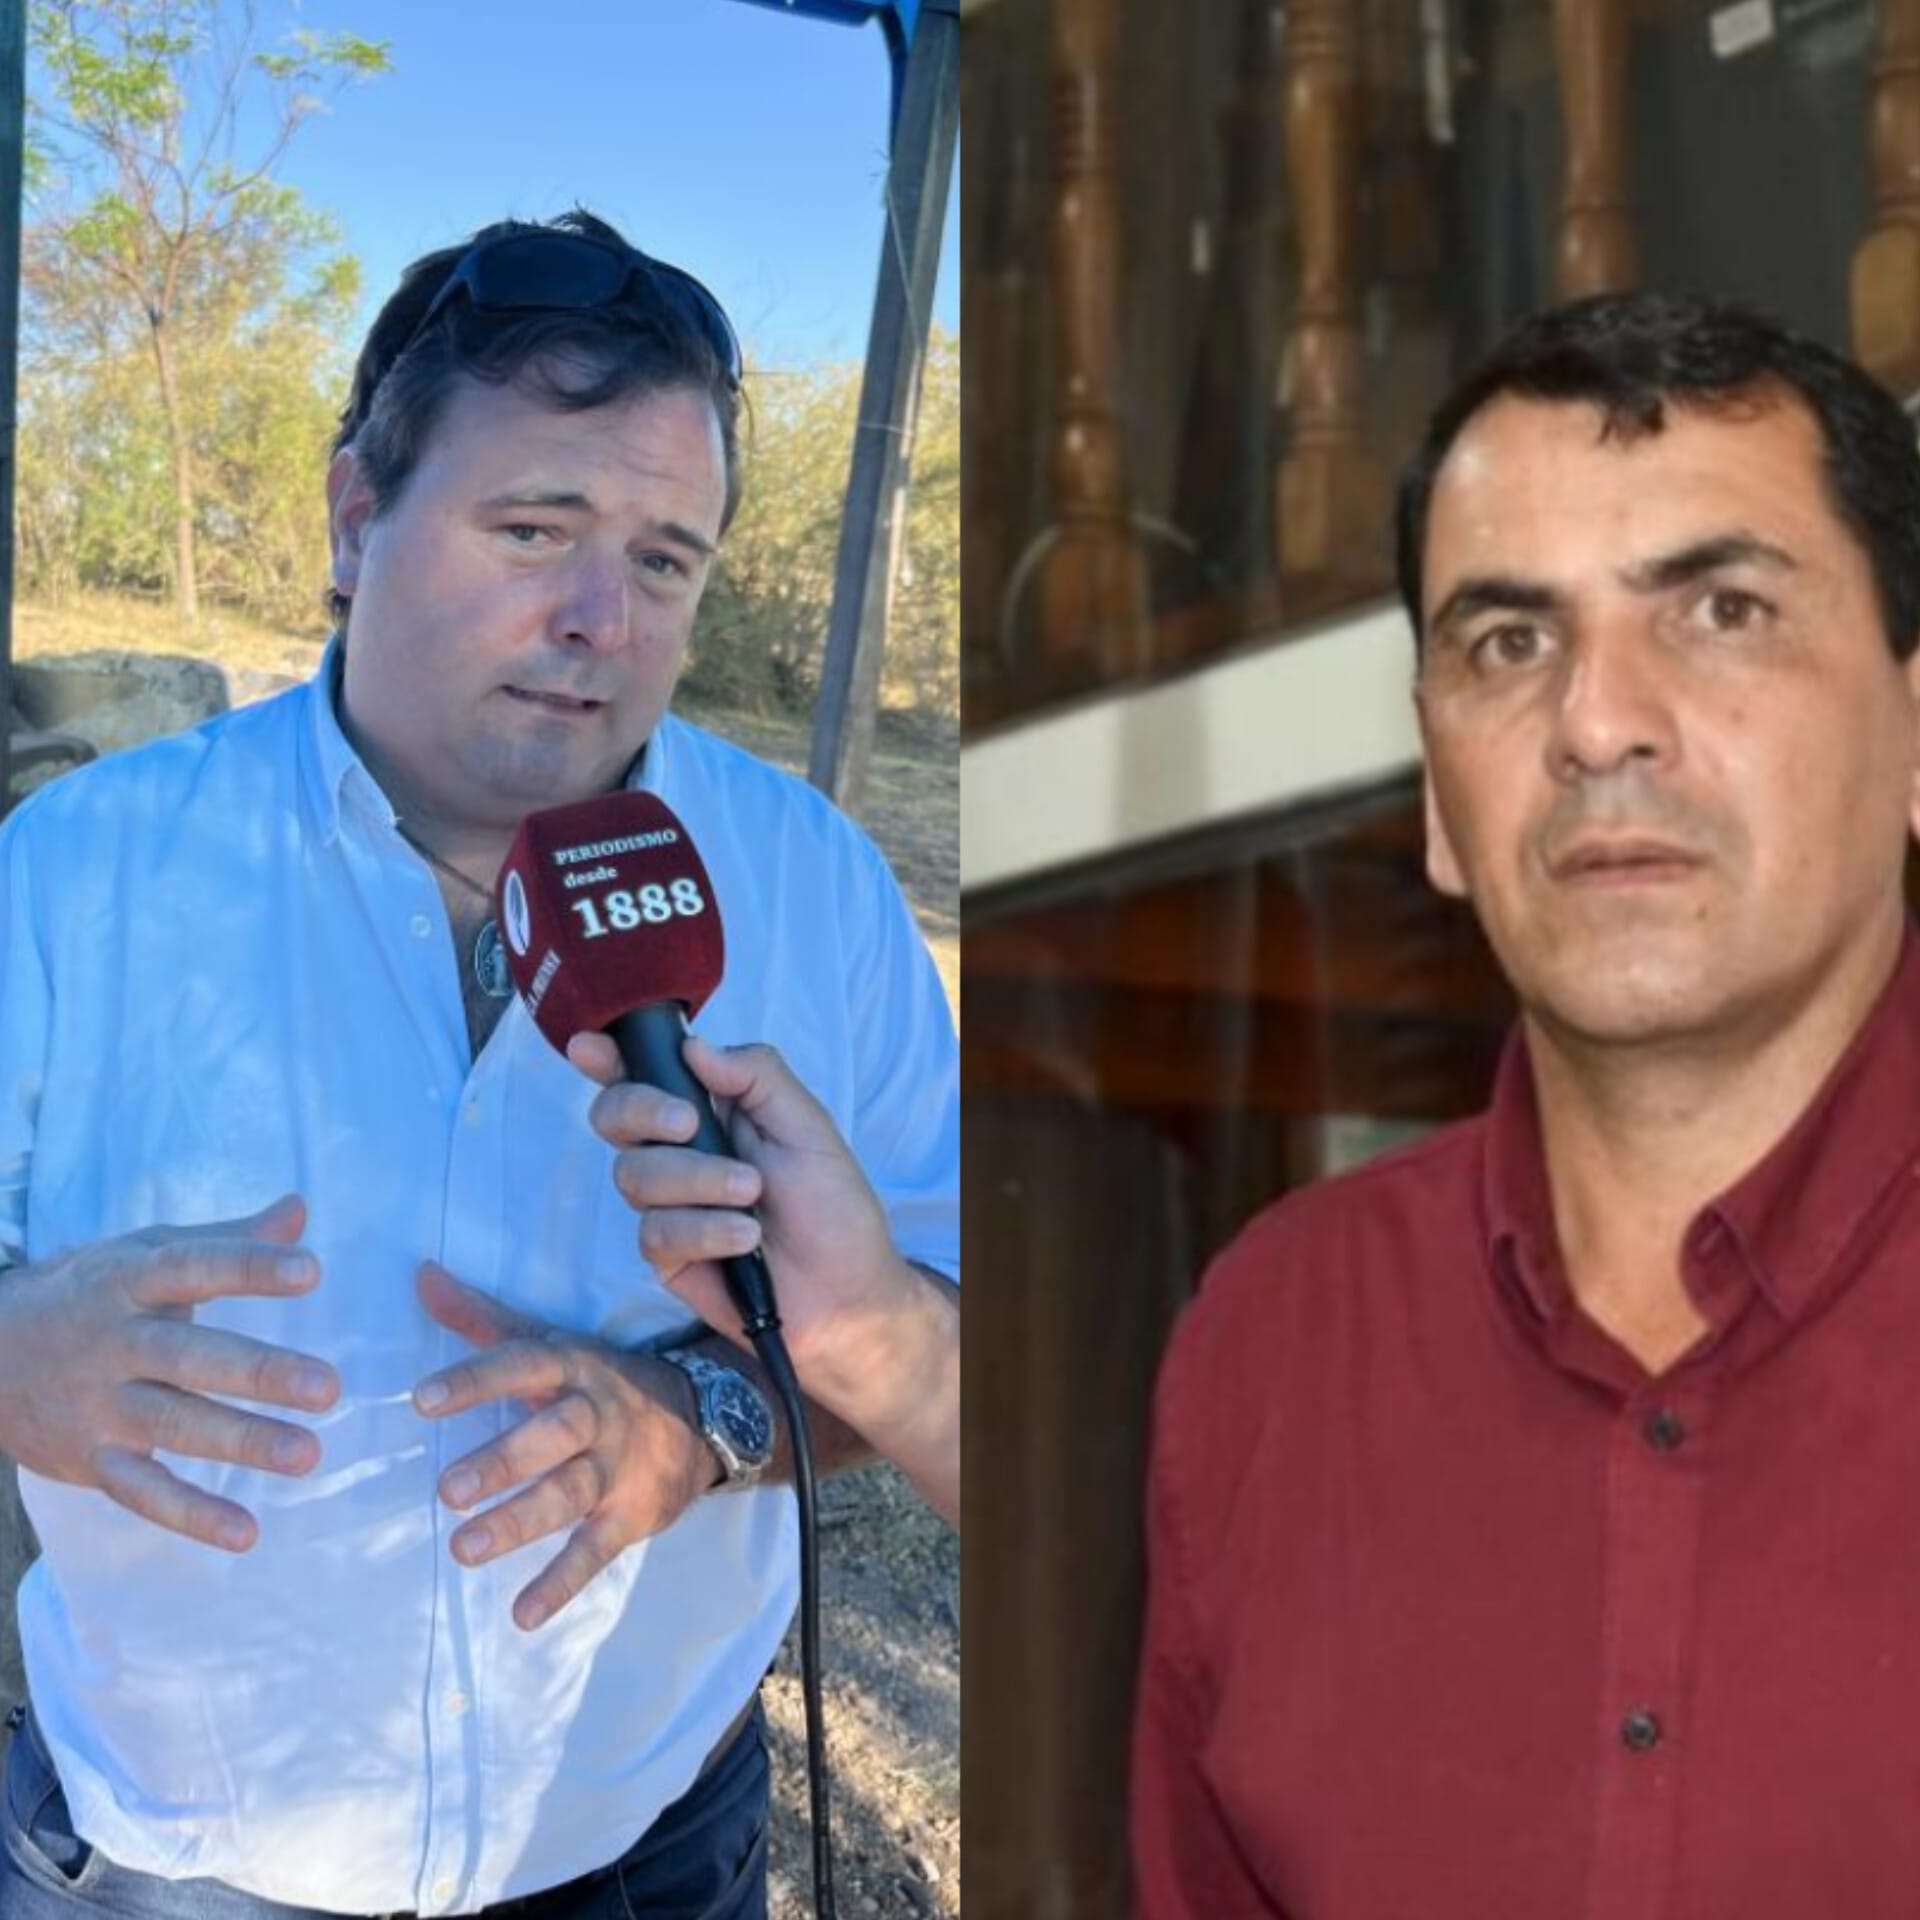 Polémica entre Mario Furtado y Mariano Casola / “Pareciera que Mario Furtado quiere volver al Partido Colorado”.